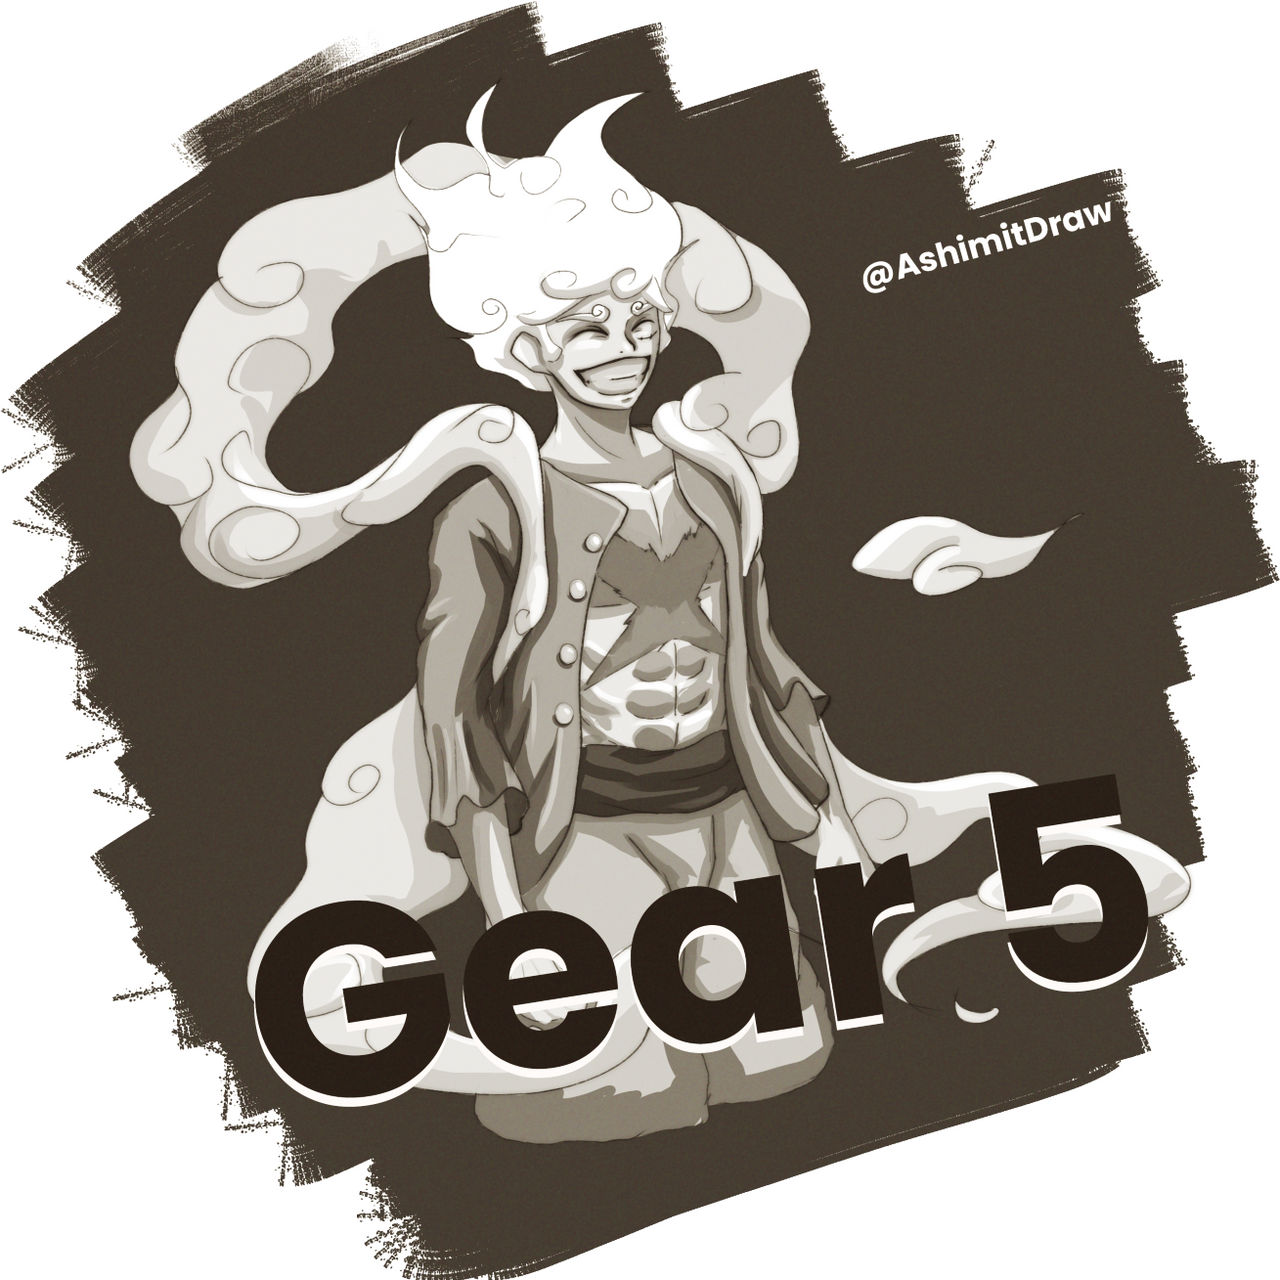 Luffy Gear 5- one piece 1044 by KagawariDraws on DeviantArt